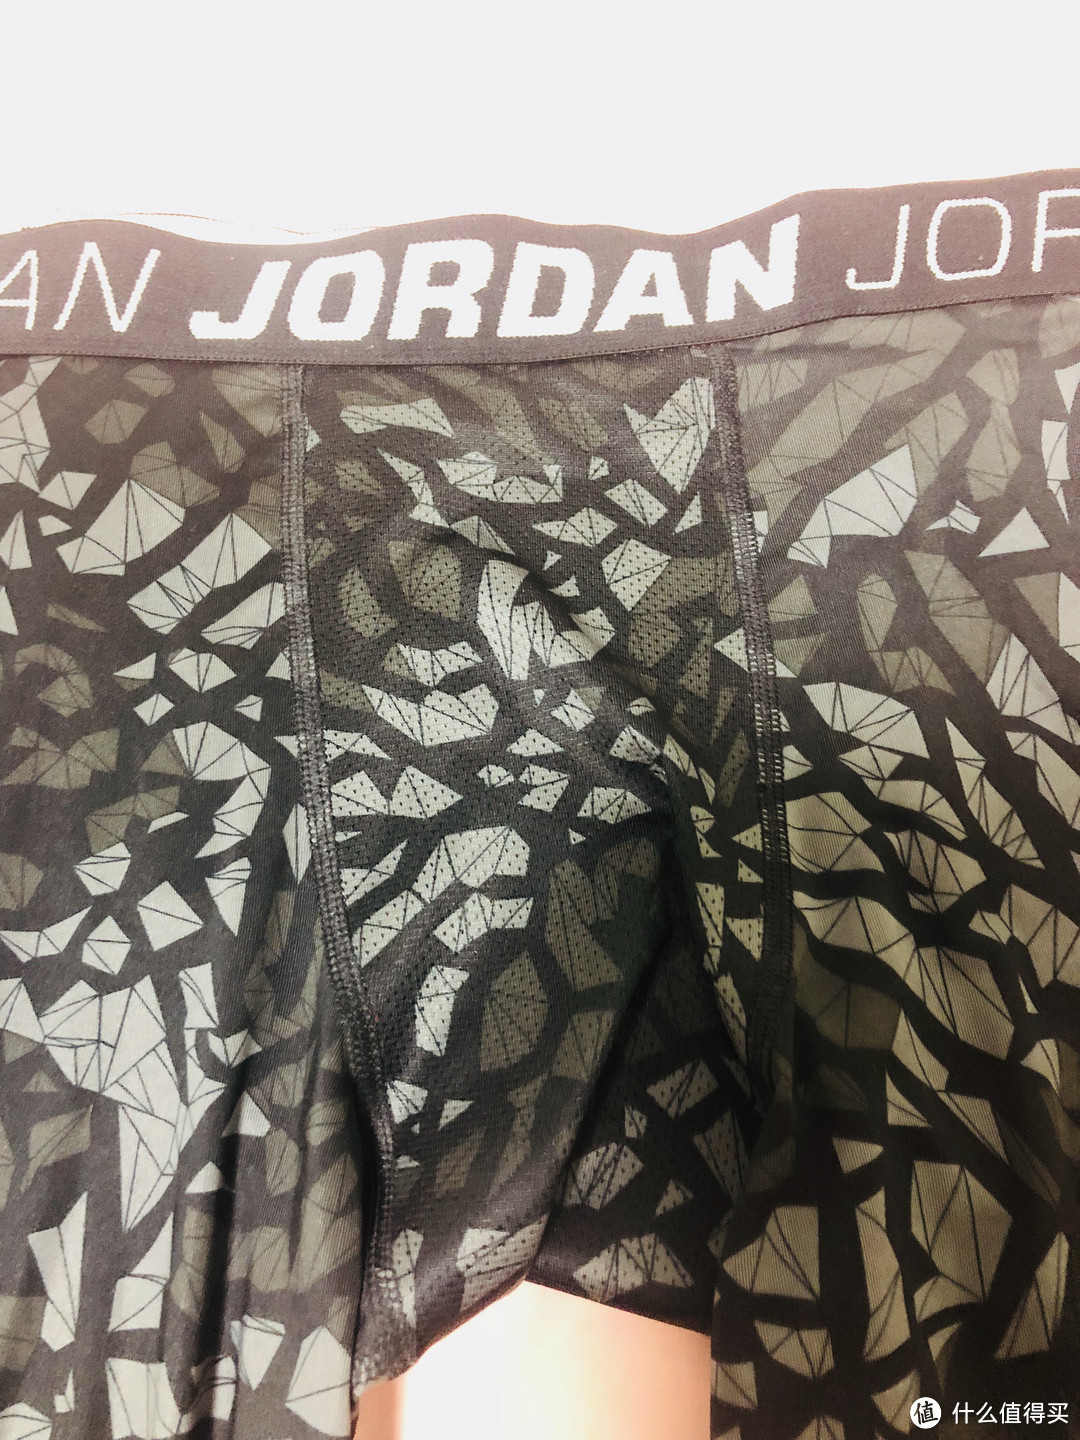 两款Air jordan 紧身裤 对比